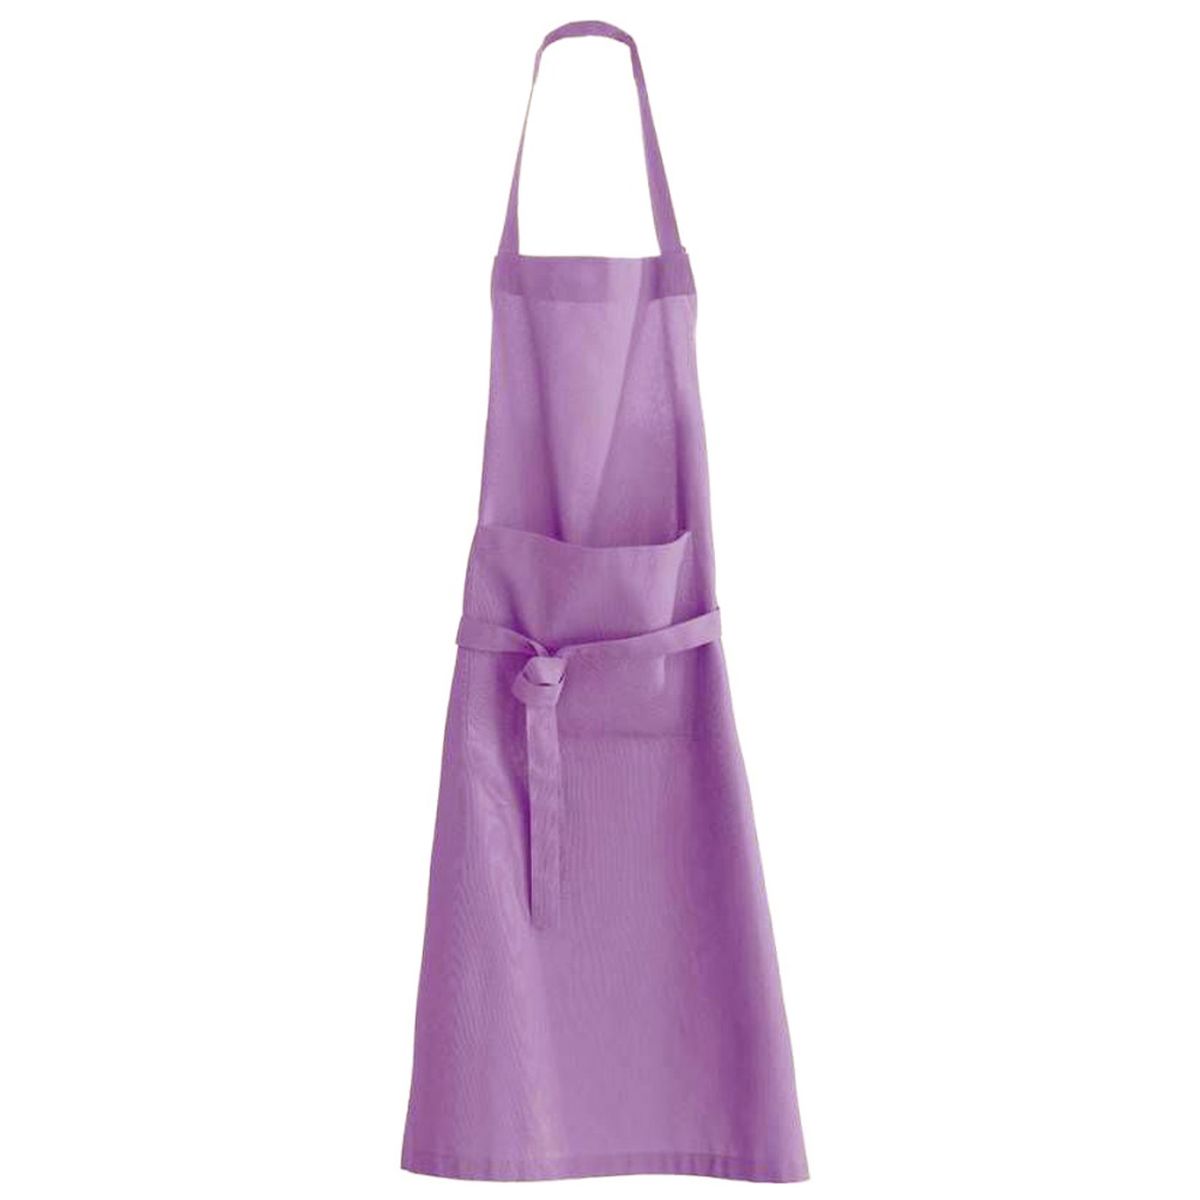 Adult cotton apron